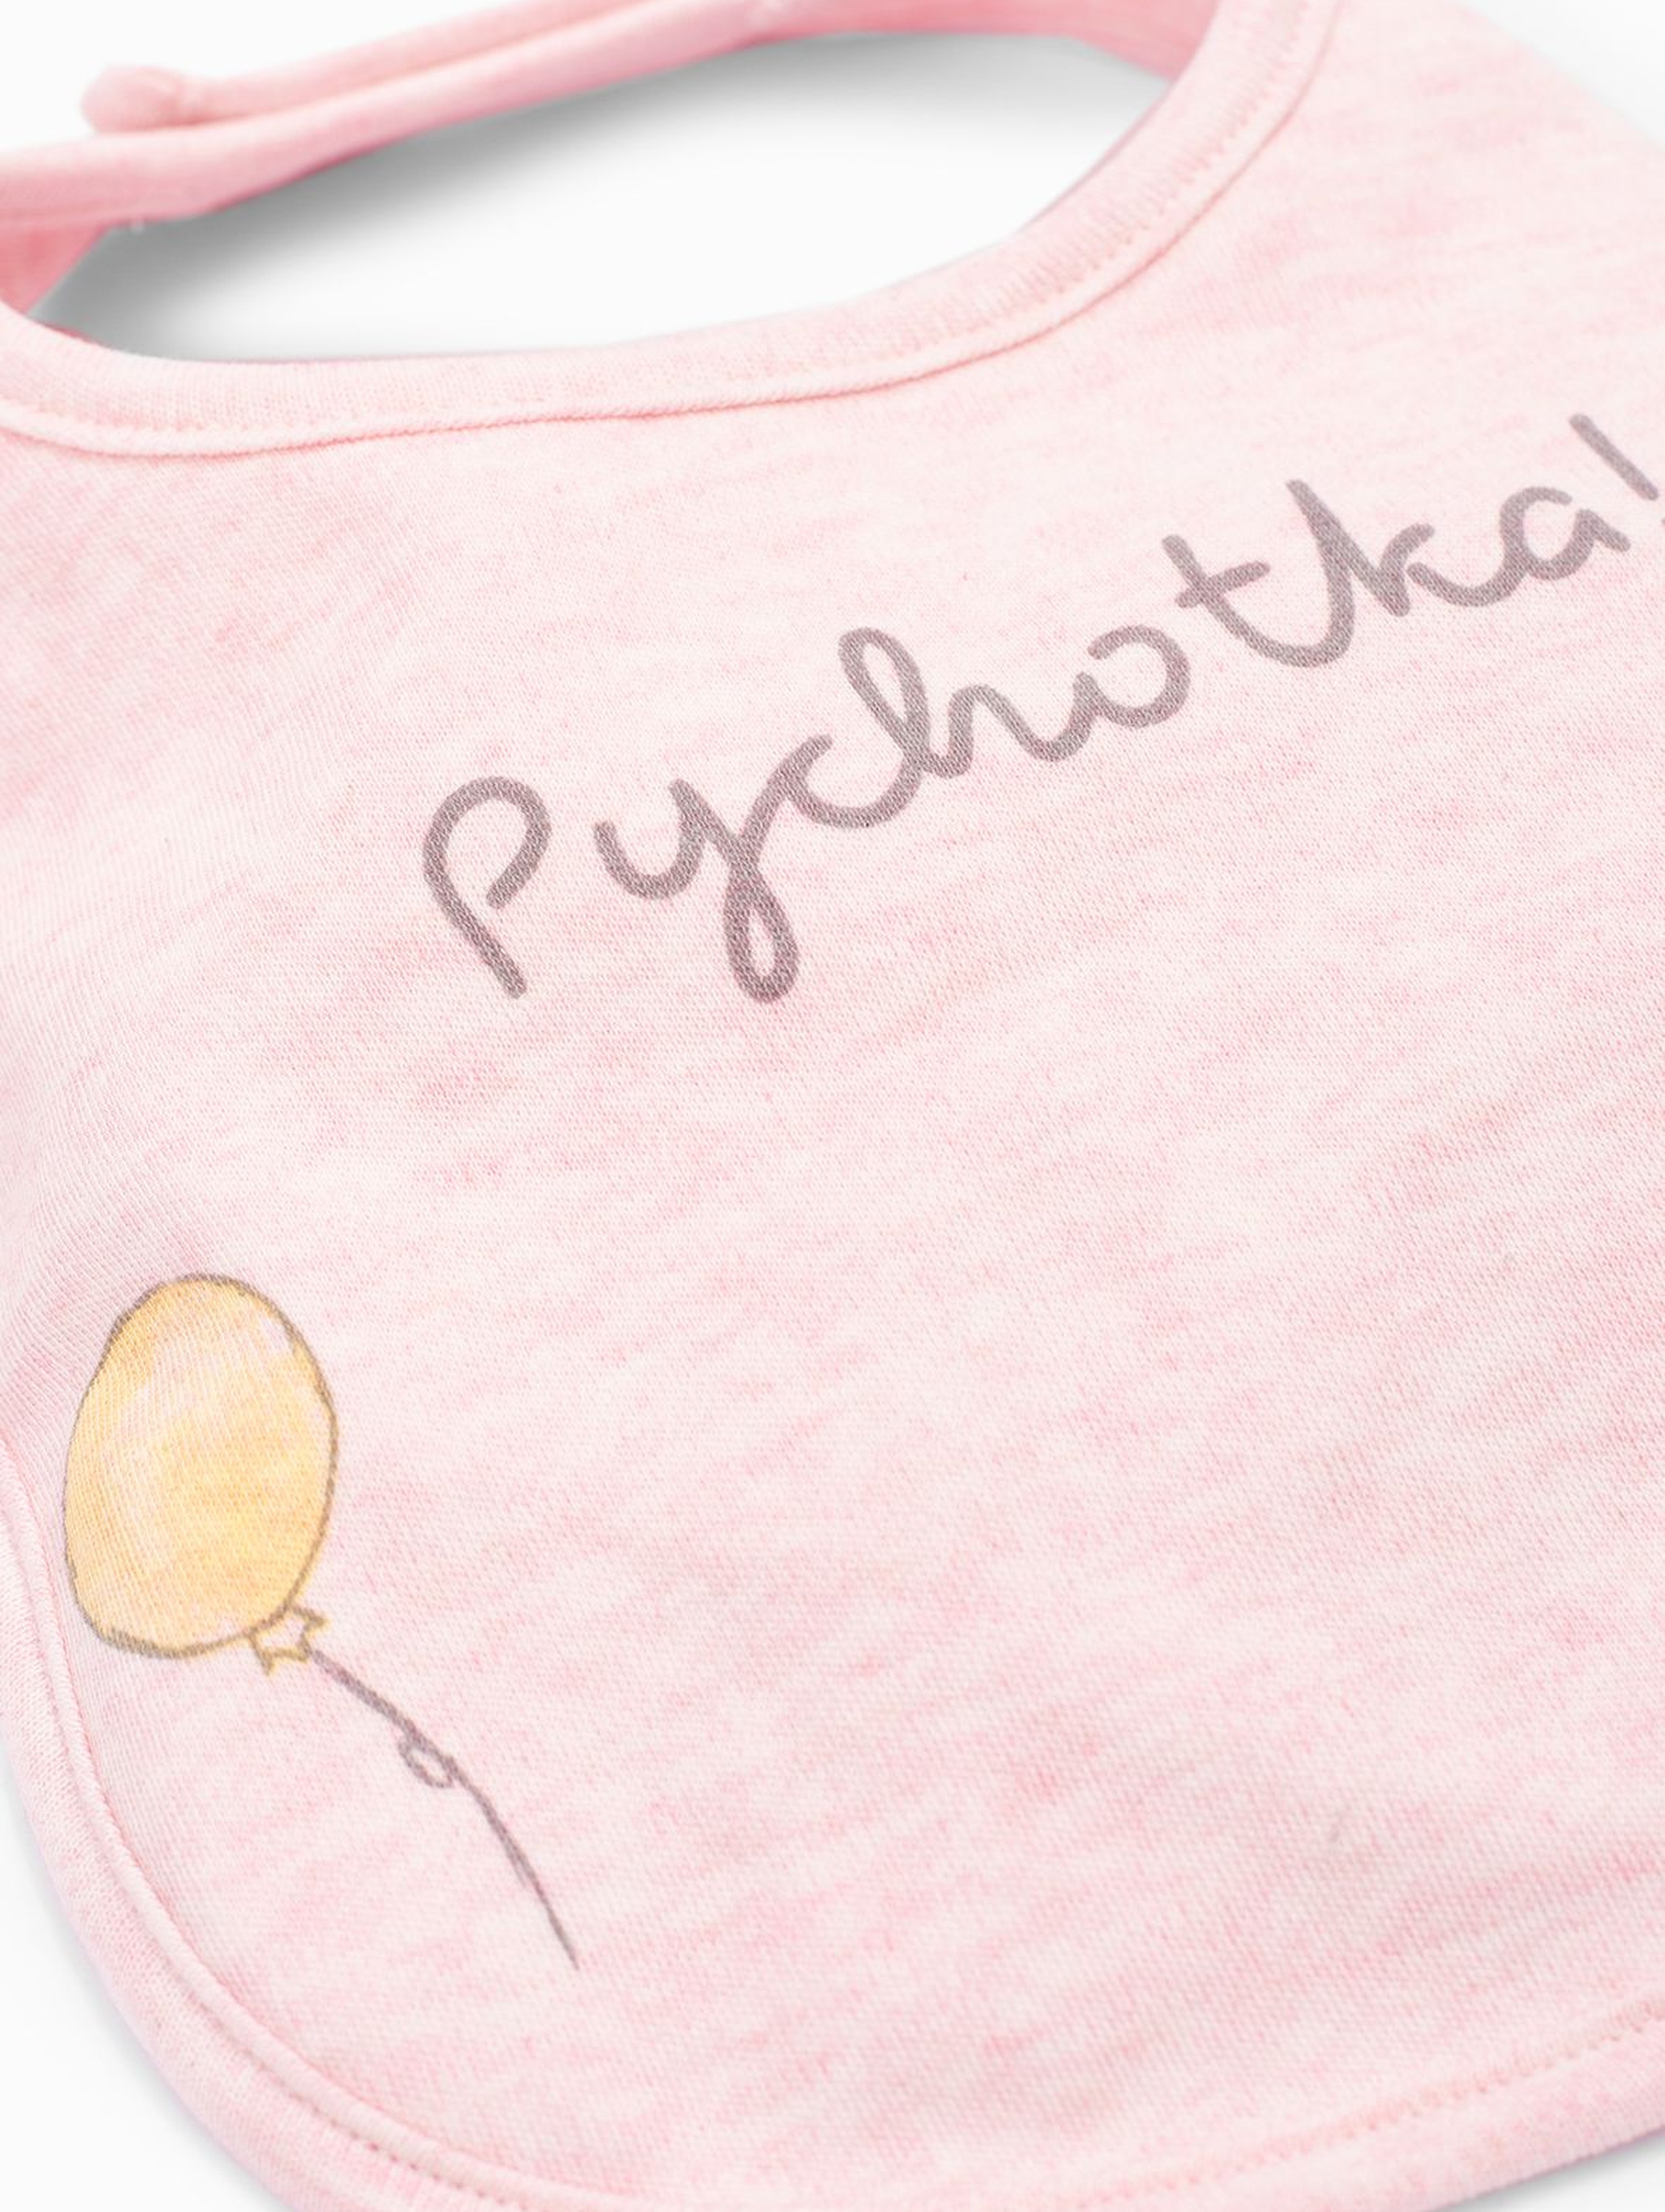 Śliniak niemowlęcy z napisem Pychotka - różowy